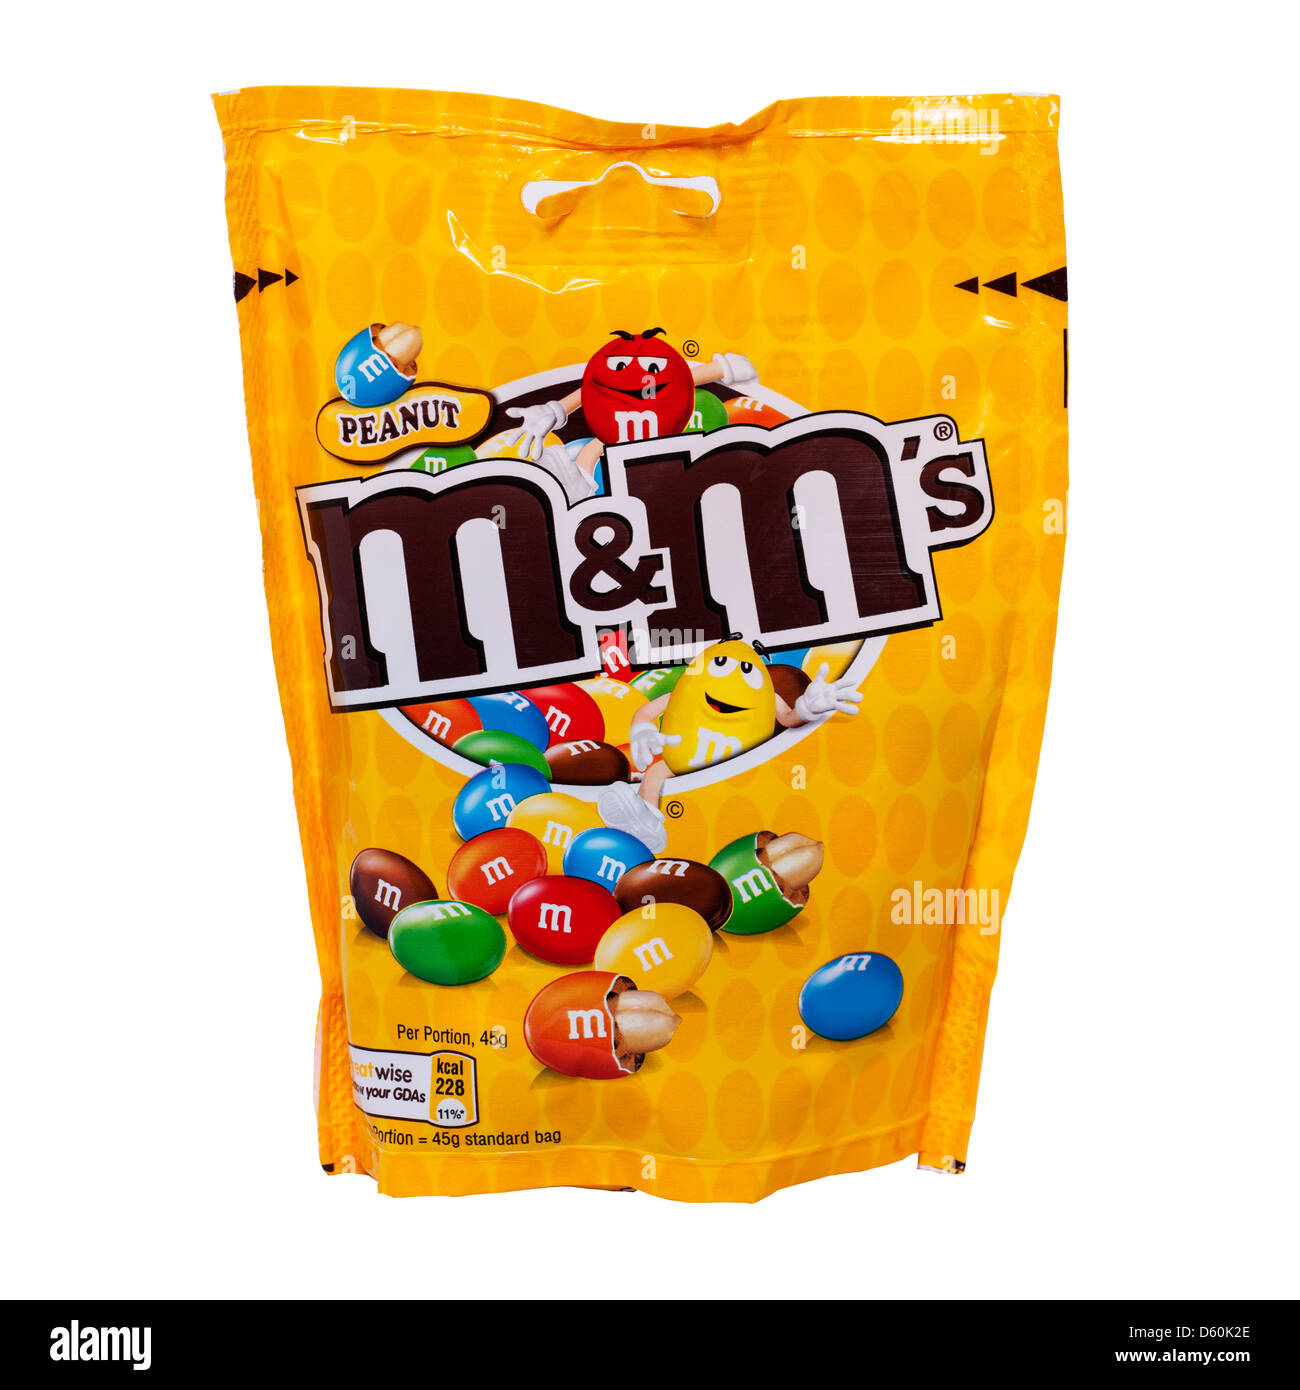 M et ms bonbons Banque d'images détourées - Alamy